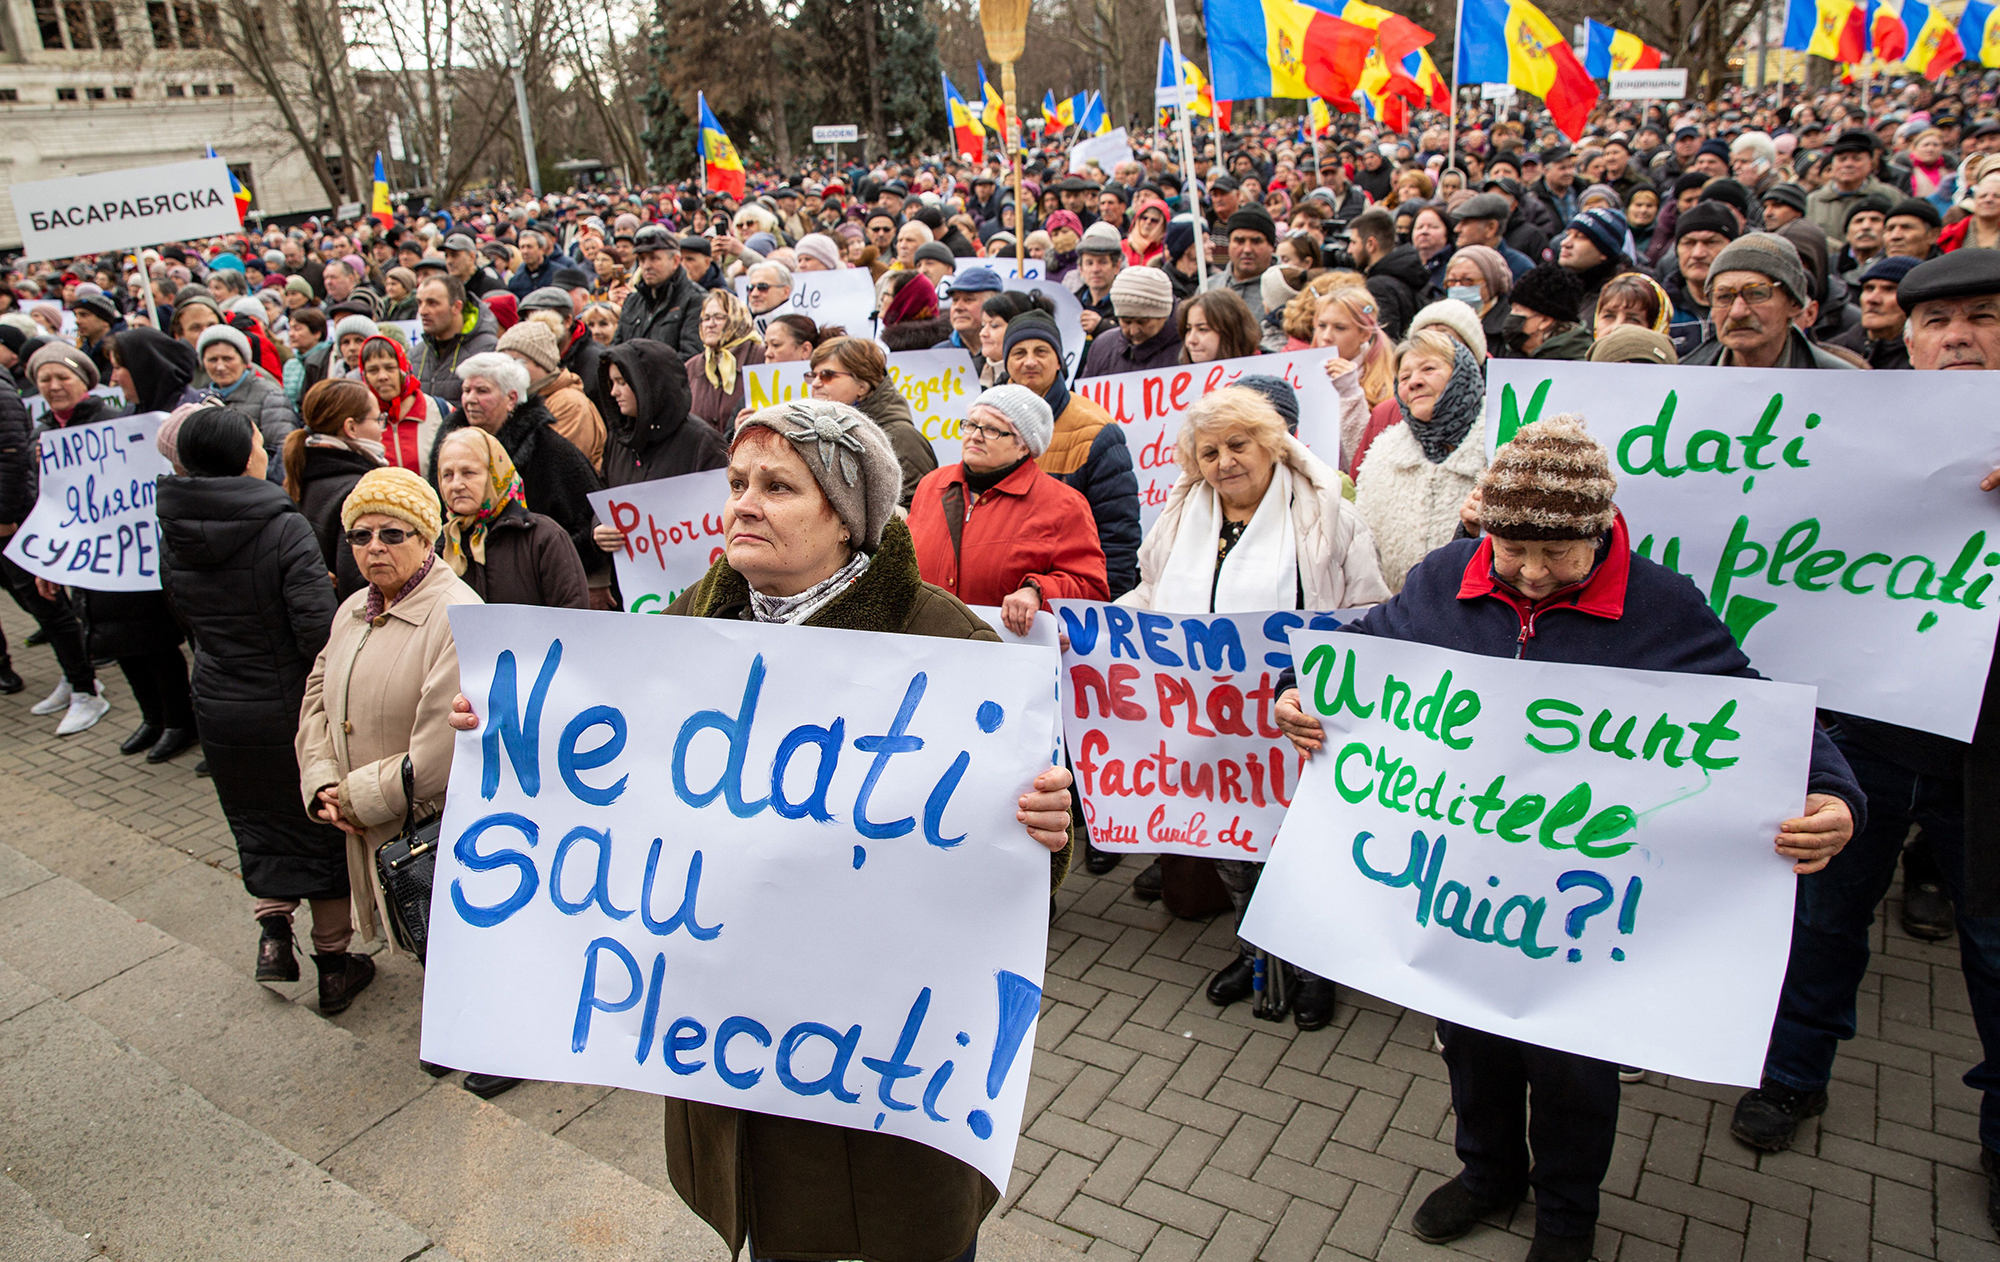 Російський хаос у Кишиневі. Що відбувається у Молдові і чи є загроза Україні